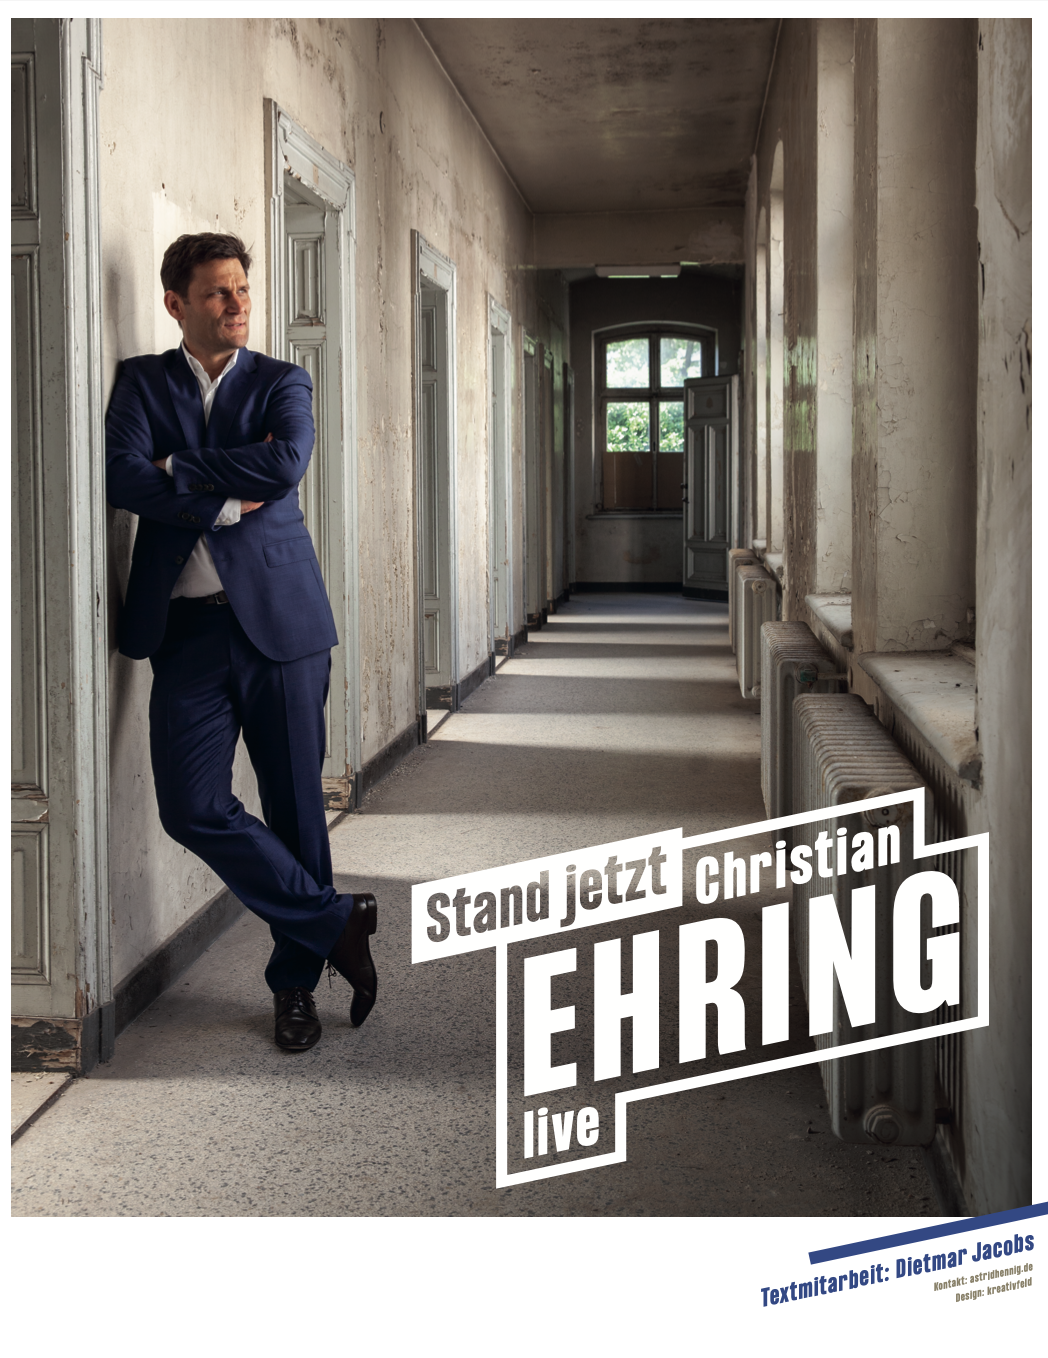 Christian Ehring